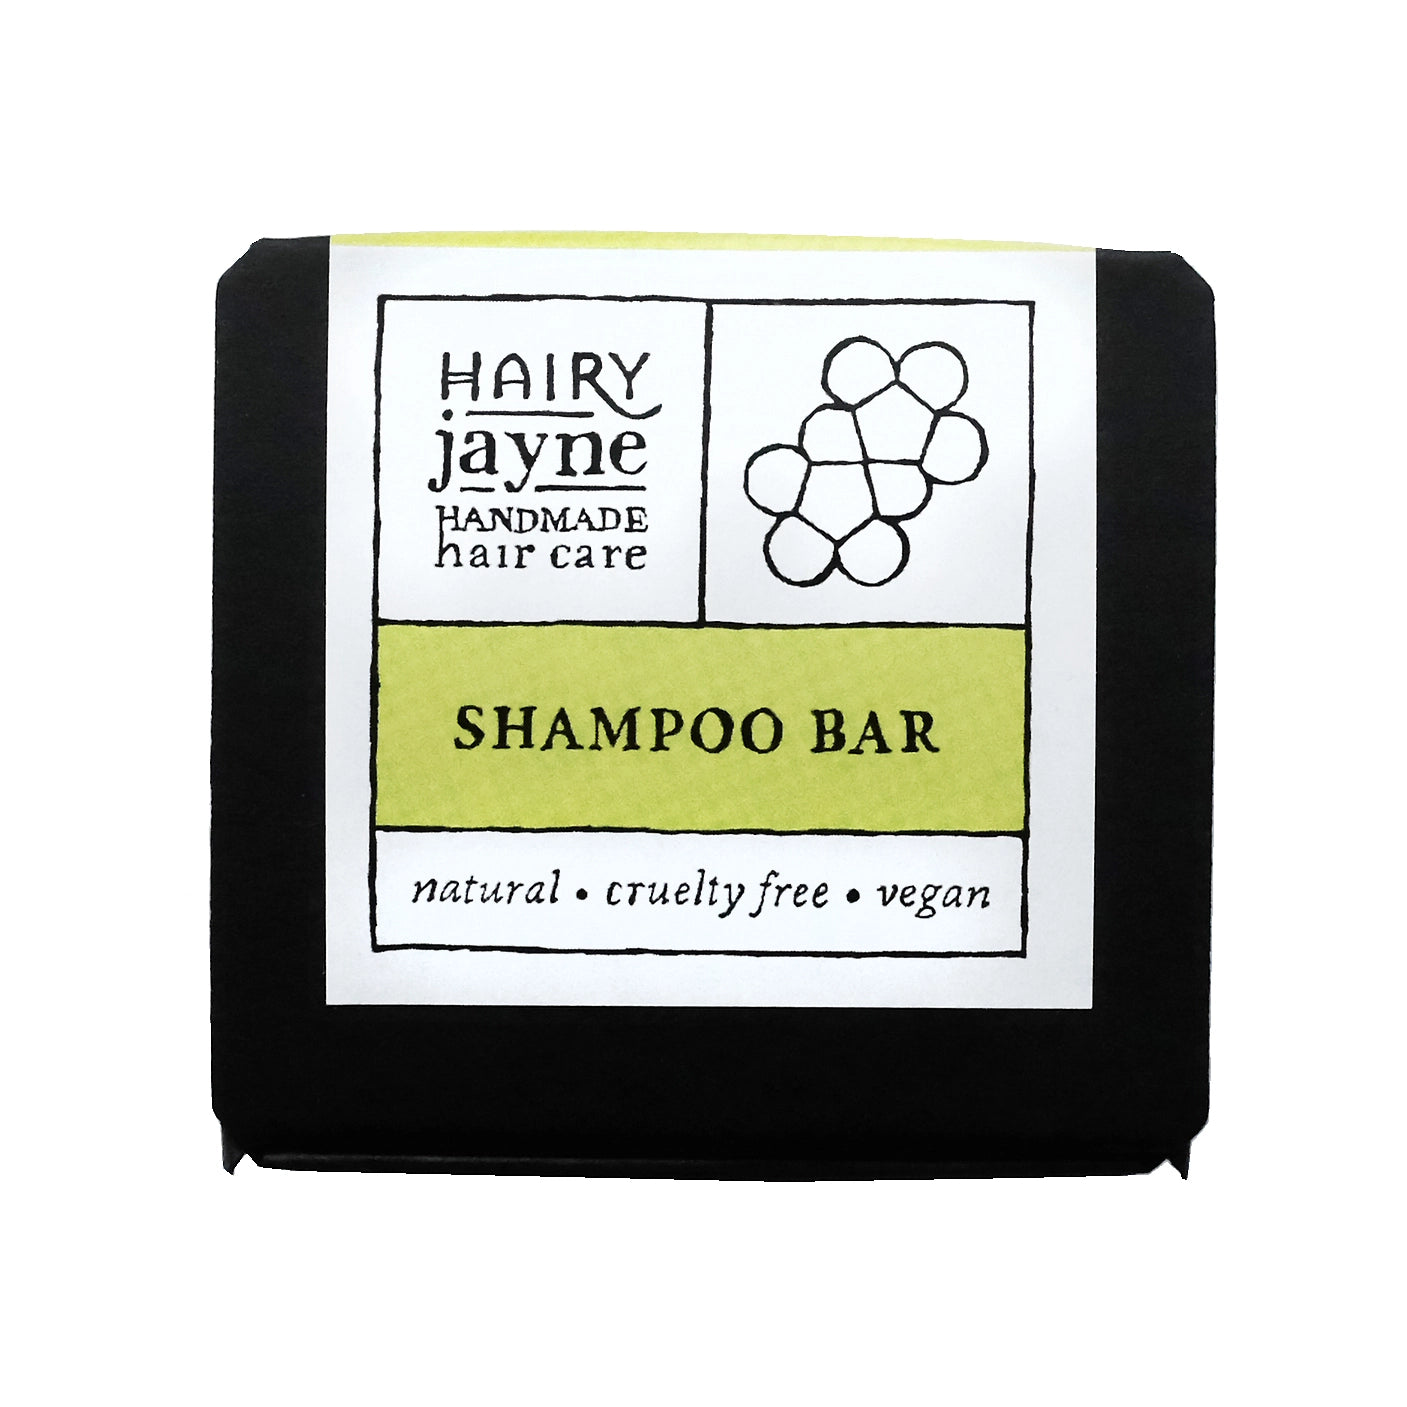 Hairy Jayne Shampoo Bar